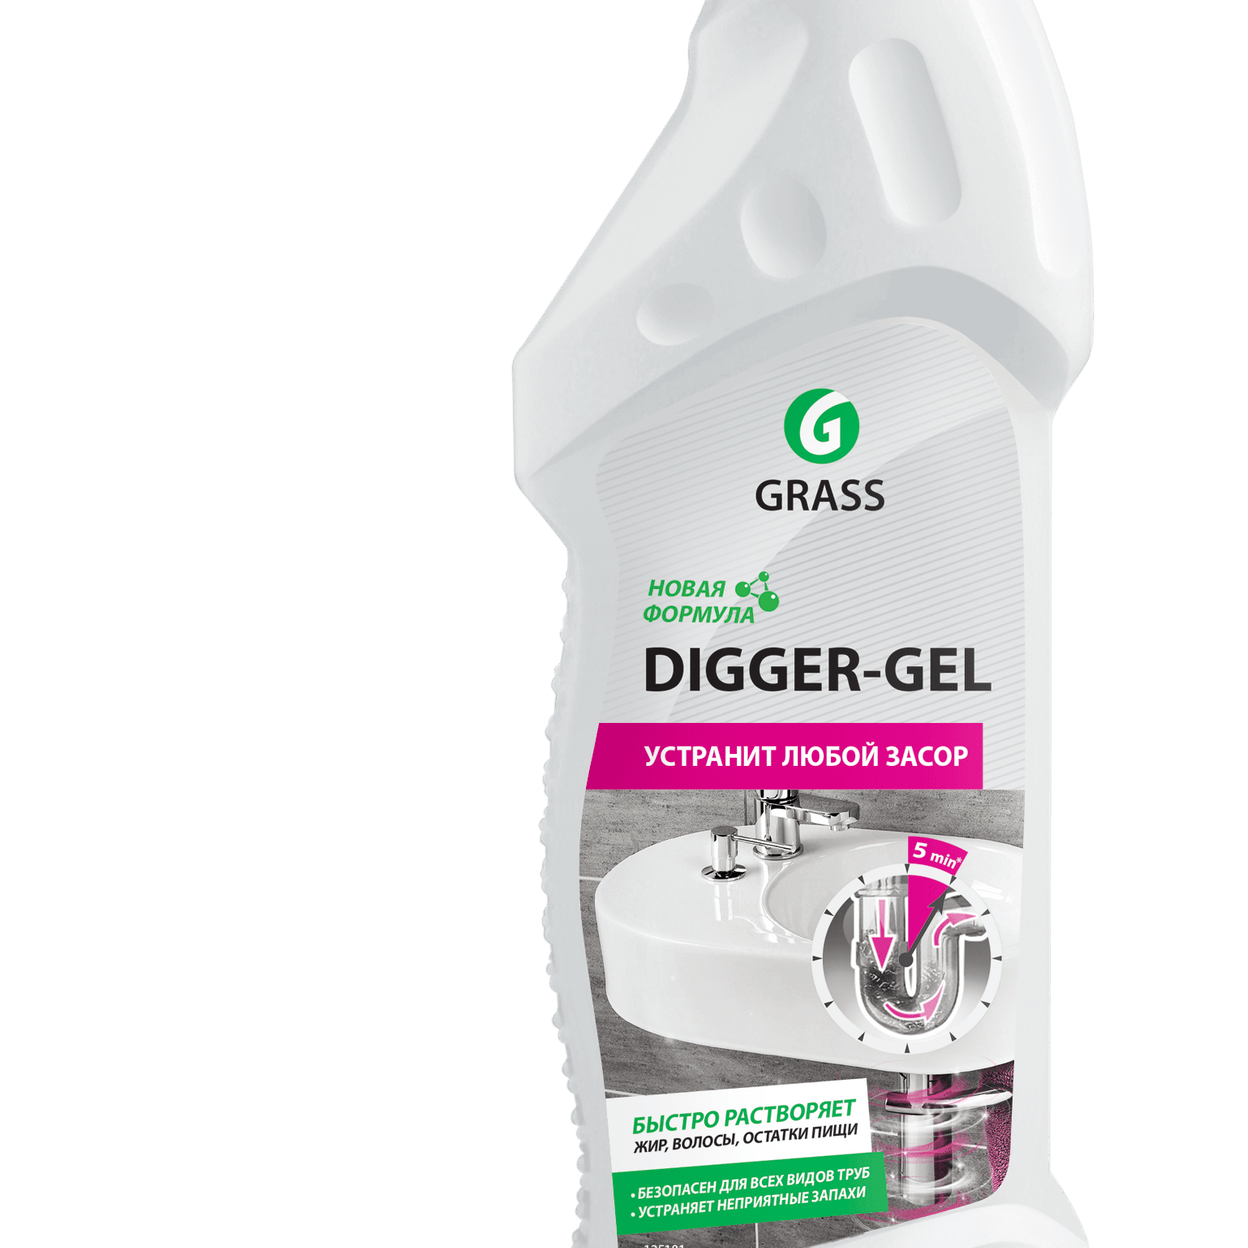 Grass "Digger-Gel" гель для чистки труб 750 мл. 125181 Grass ср-во для прочистки труб "Digger-Gel" 750 мл, шт. Средство Грасс диггер гель для прочистки канализационных труб 750 мл. Диггер гель 750мл. Digger gel для прочистки